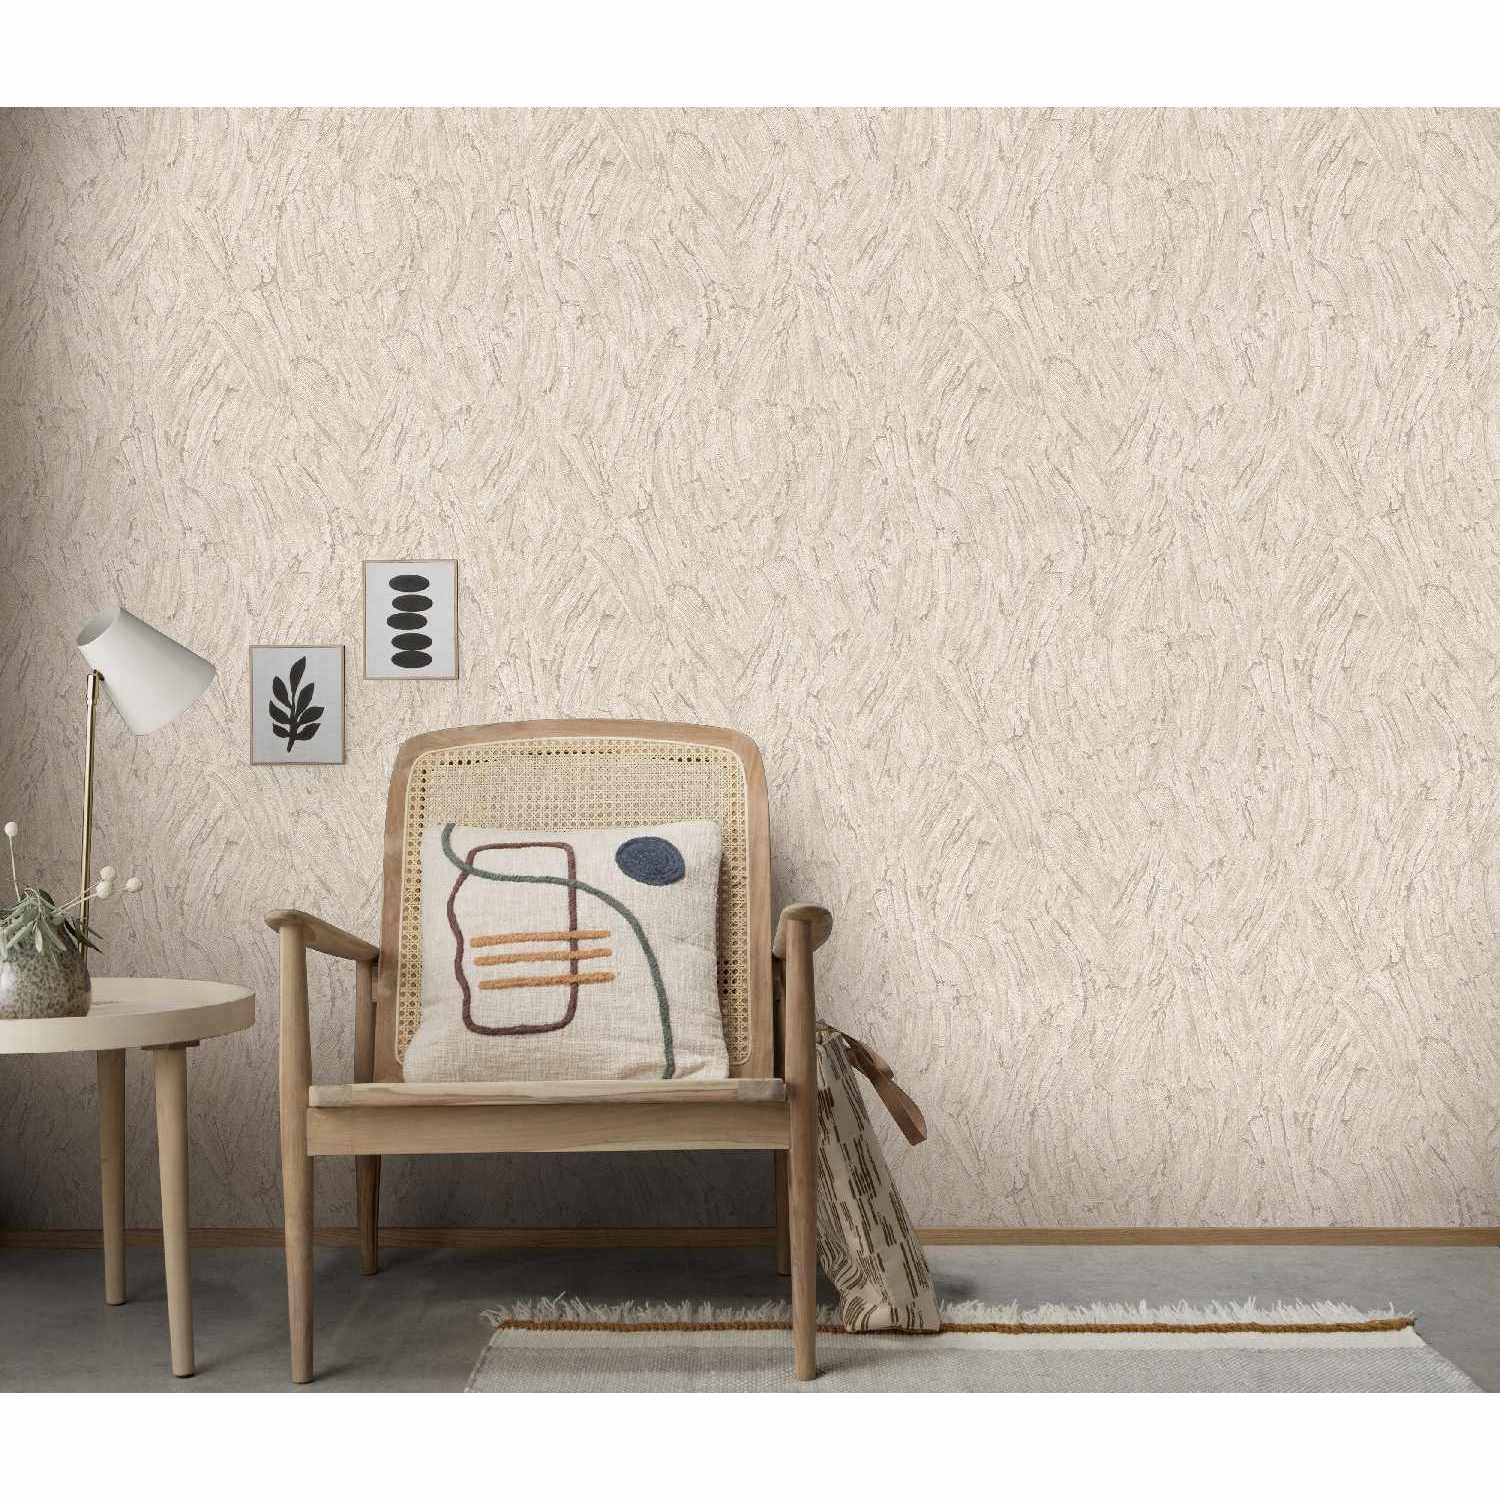 Loft hatású beige színű kő mintázatú design tapéta